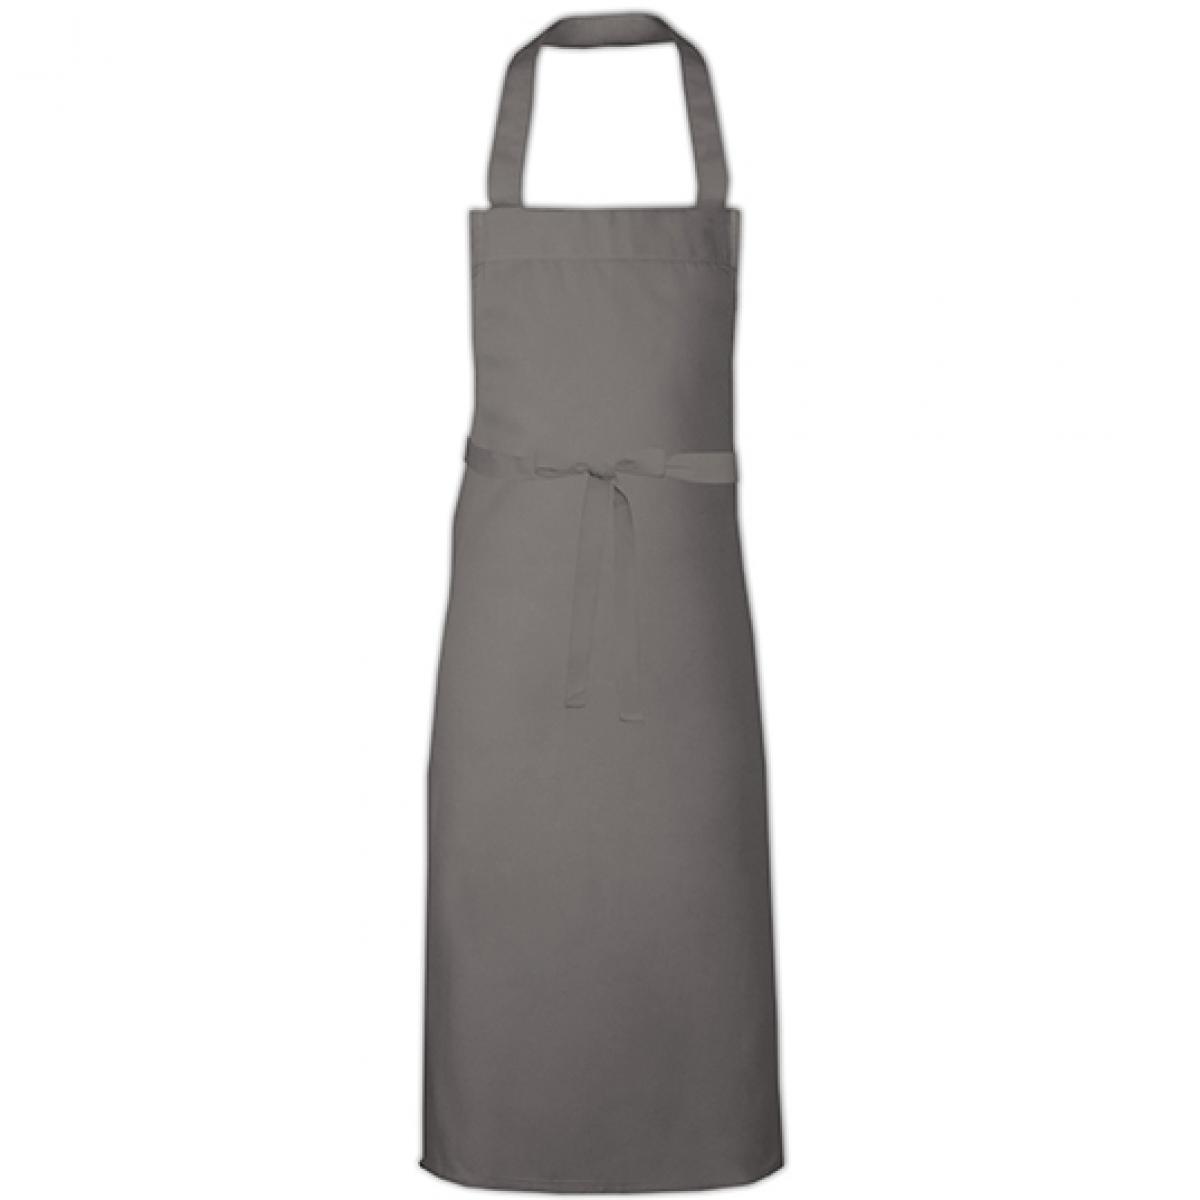 Hersteller: Link Kitchen Wear Herstellernummer: BBQ11073 Artikelbezeichnung: Barbecue Apron XL - 73 x 110 cm - Waschbar bis 60 °C Farbe: Dark Grey (ca. Pantone 431)